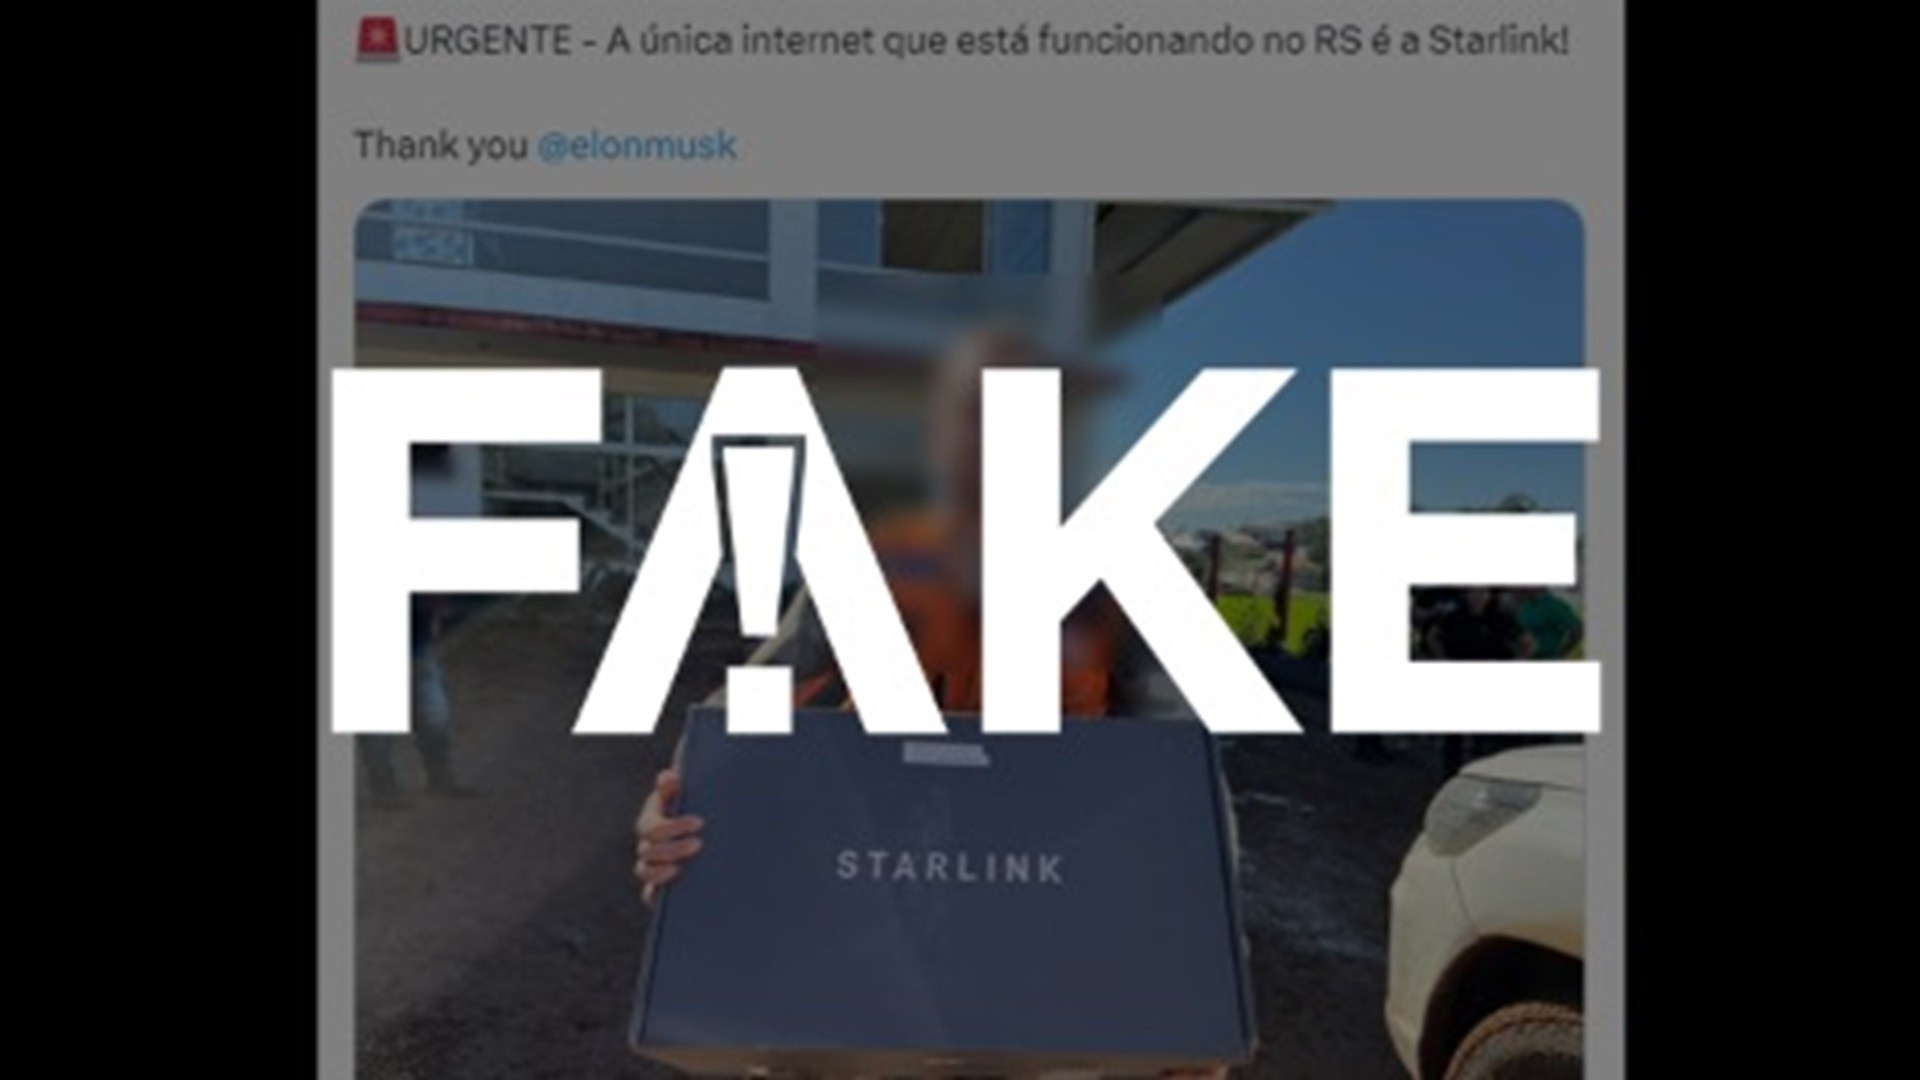 É #FAKE que Starlink é a única internet que funciona no Rio Grande do Sul